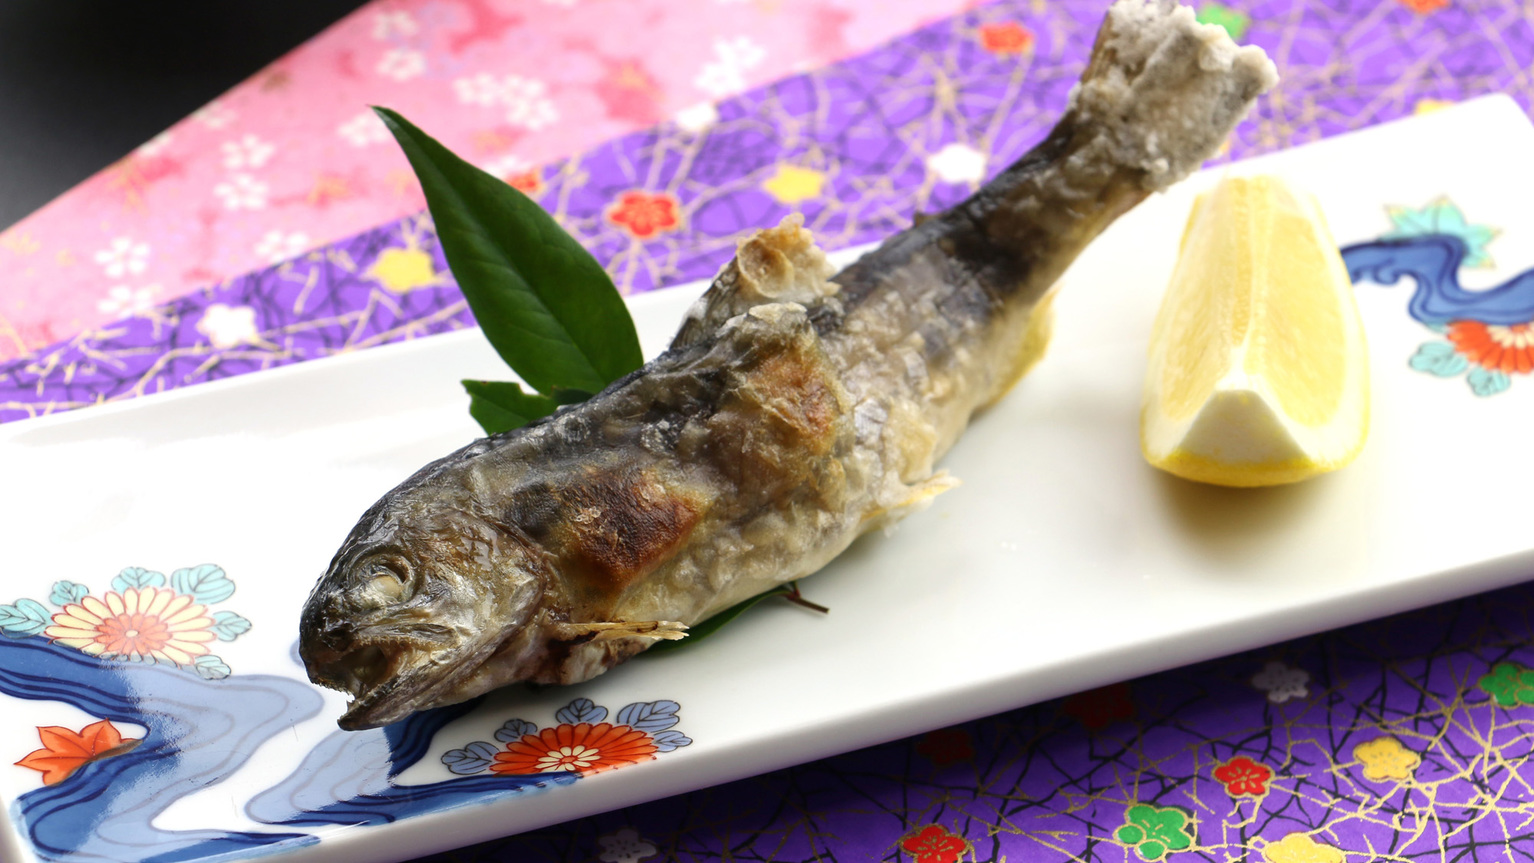 【夕食一例】川魚の塩焼きは季節により岩魚や鮎、山女になります